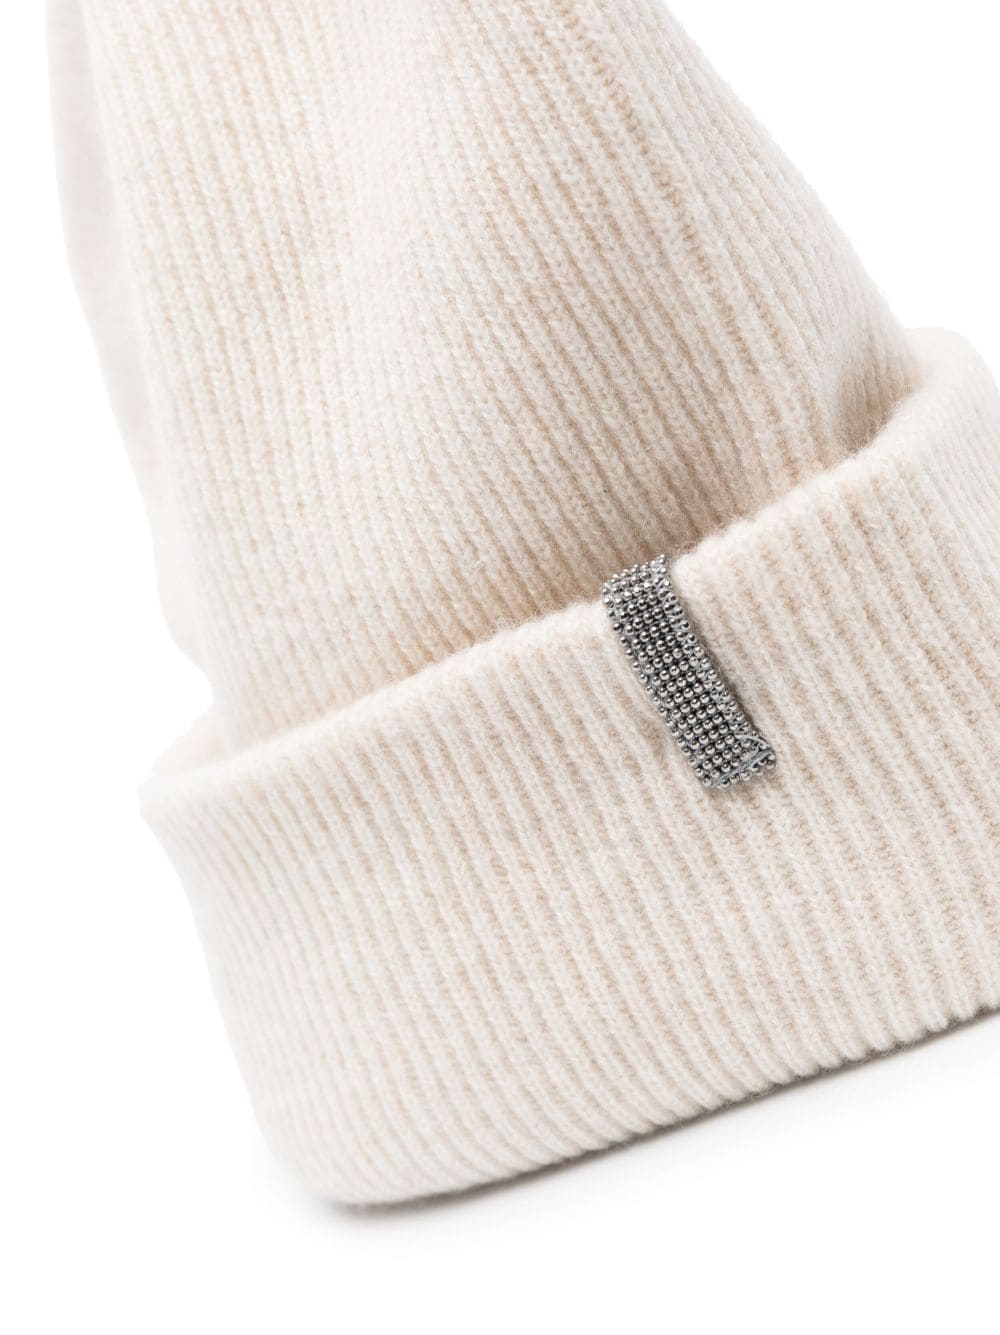 Ribbed knit cap